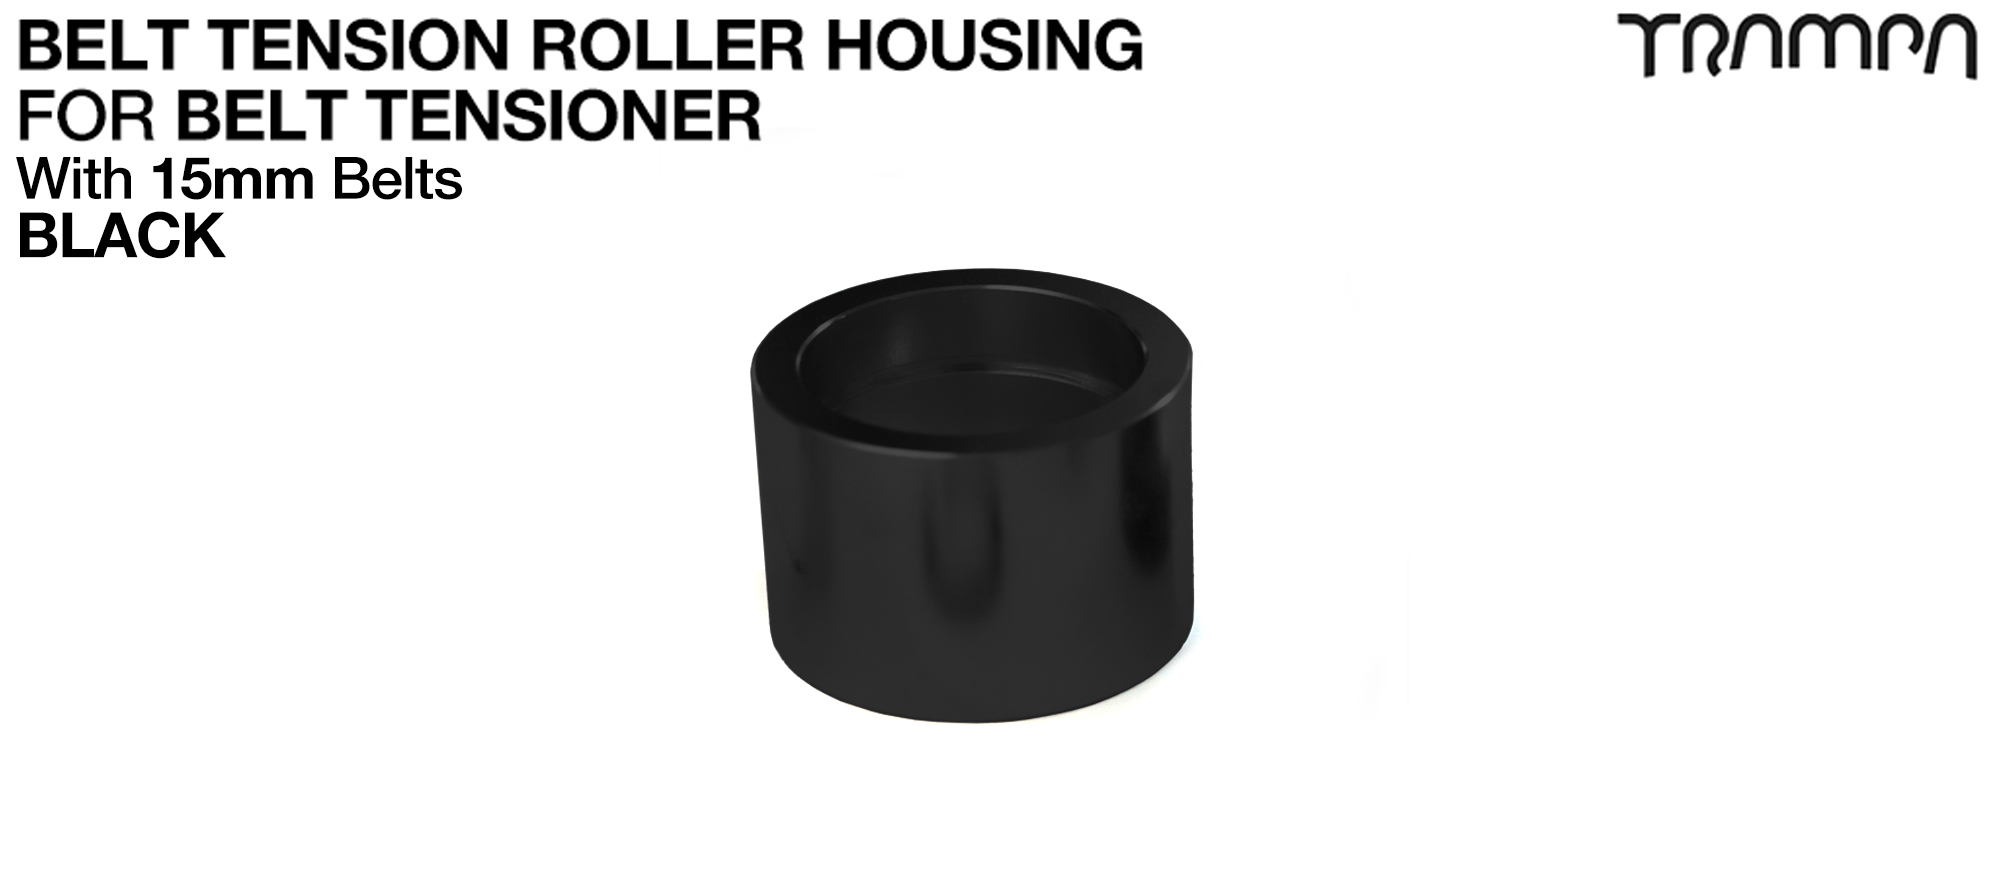 Belt Tension Roller Housing for 15mm Belts - BLACK